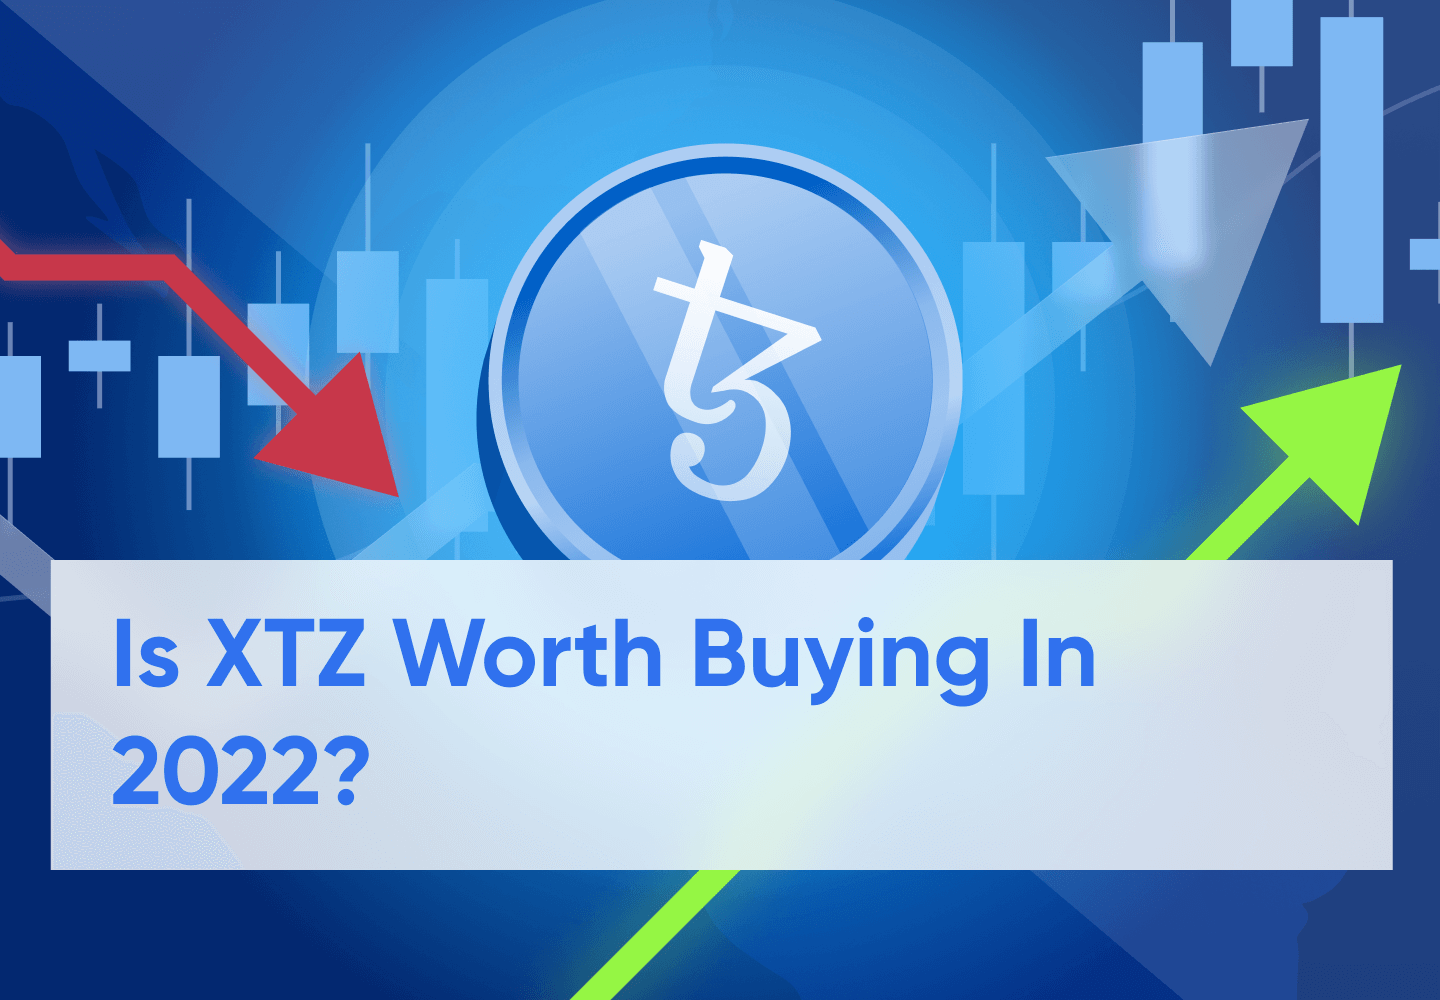 Tezos (XTZ) Price Prediction For 2023 - 2030